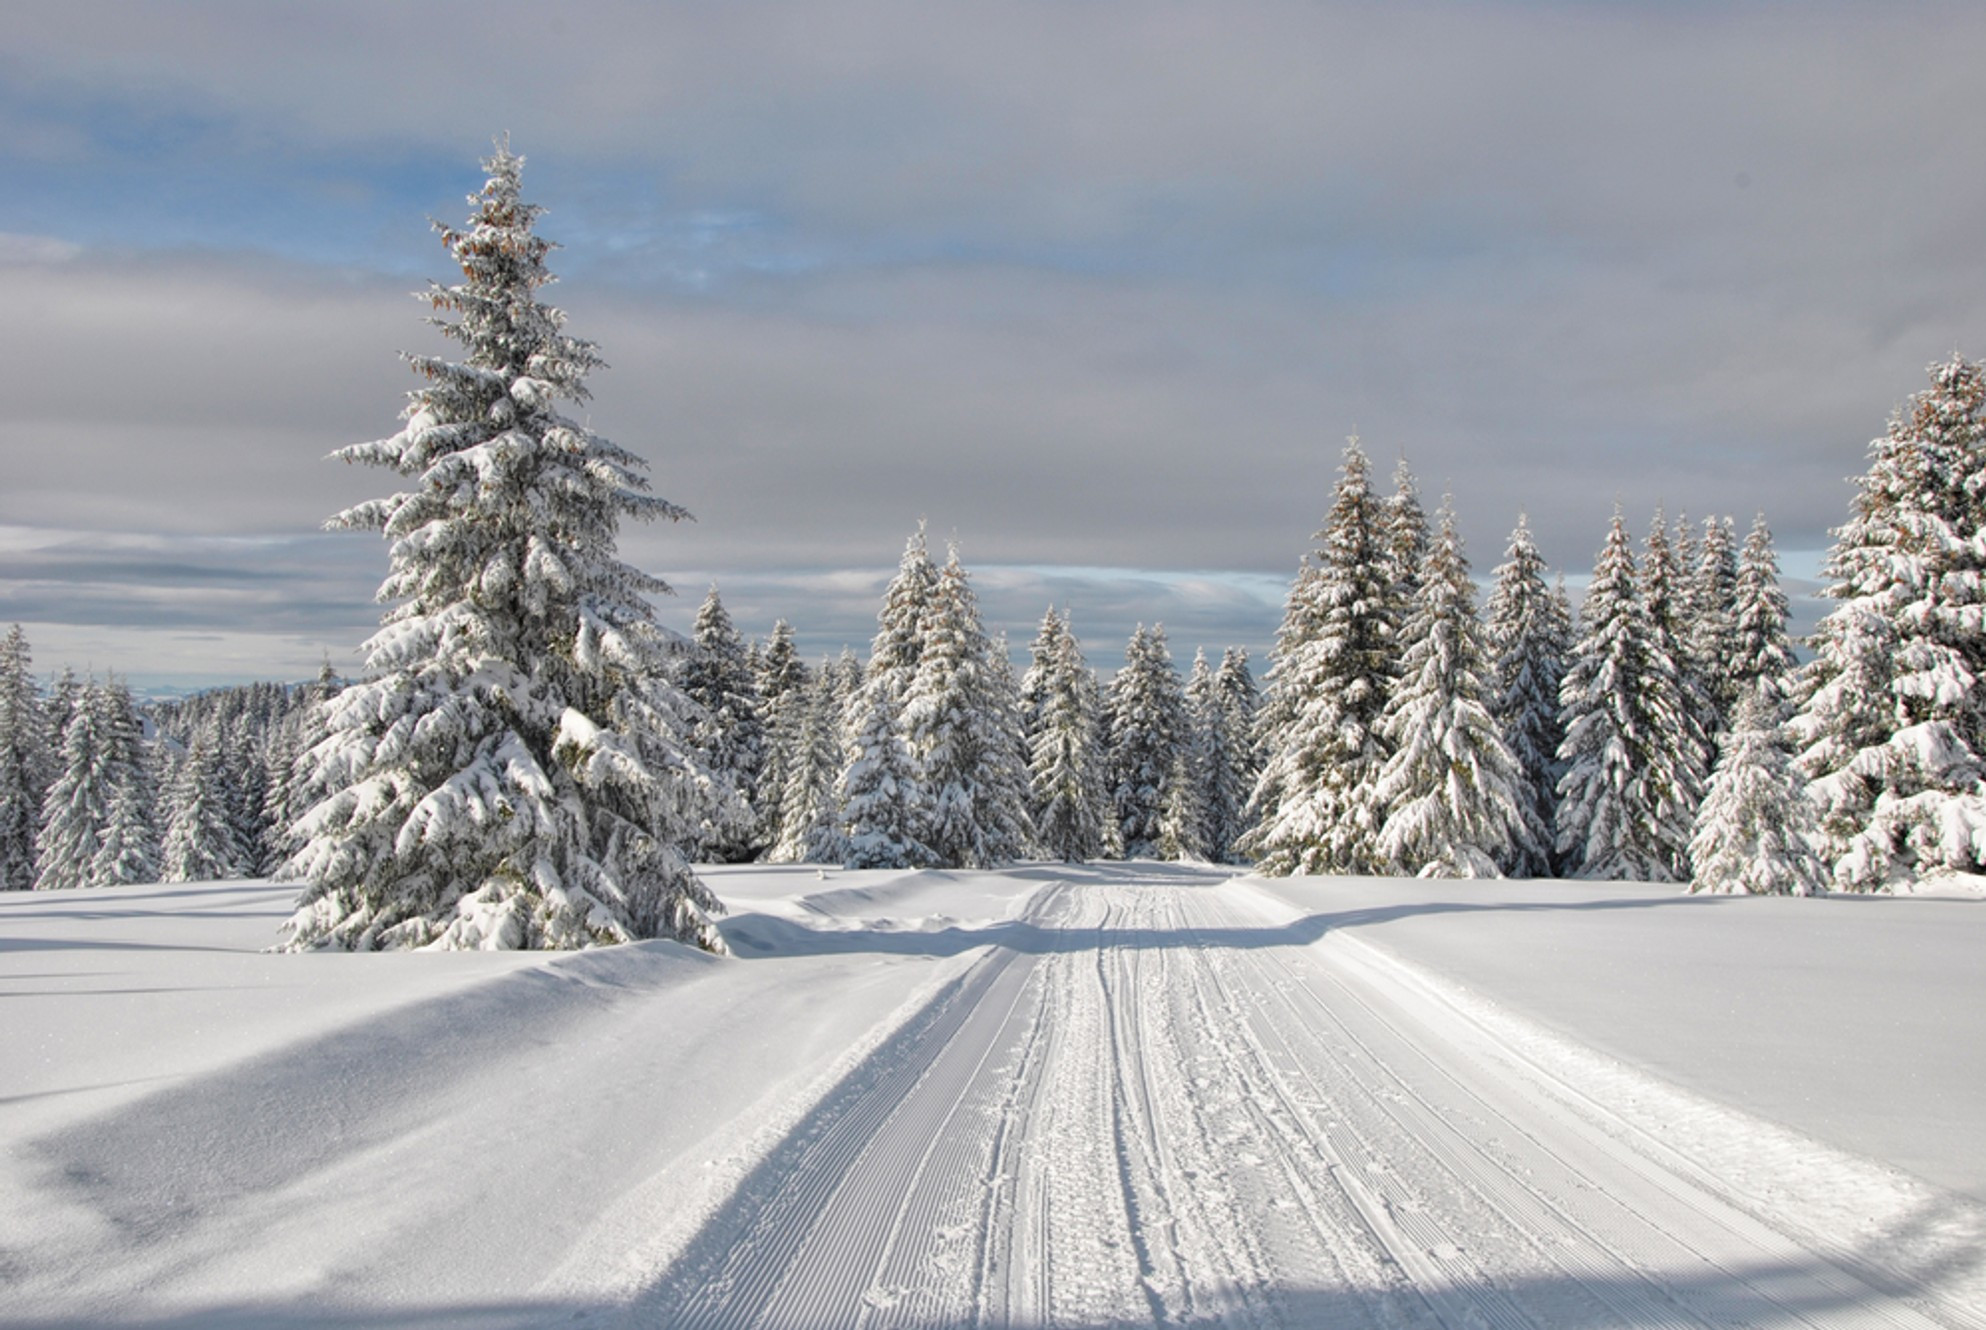 Winter Activities In Wisconsin
 Top 5 Winter Activities In The Northwoods of Wisconsin